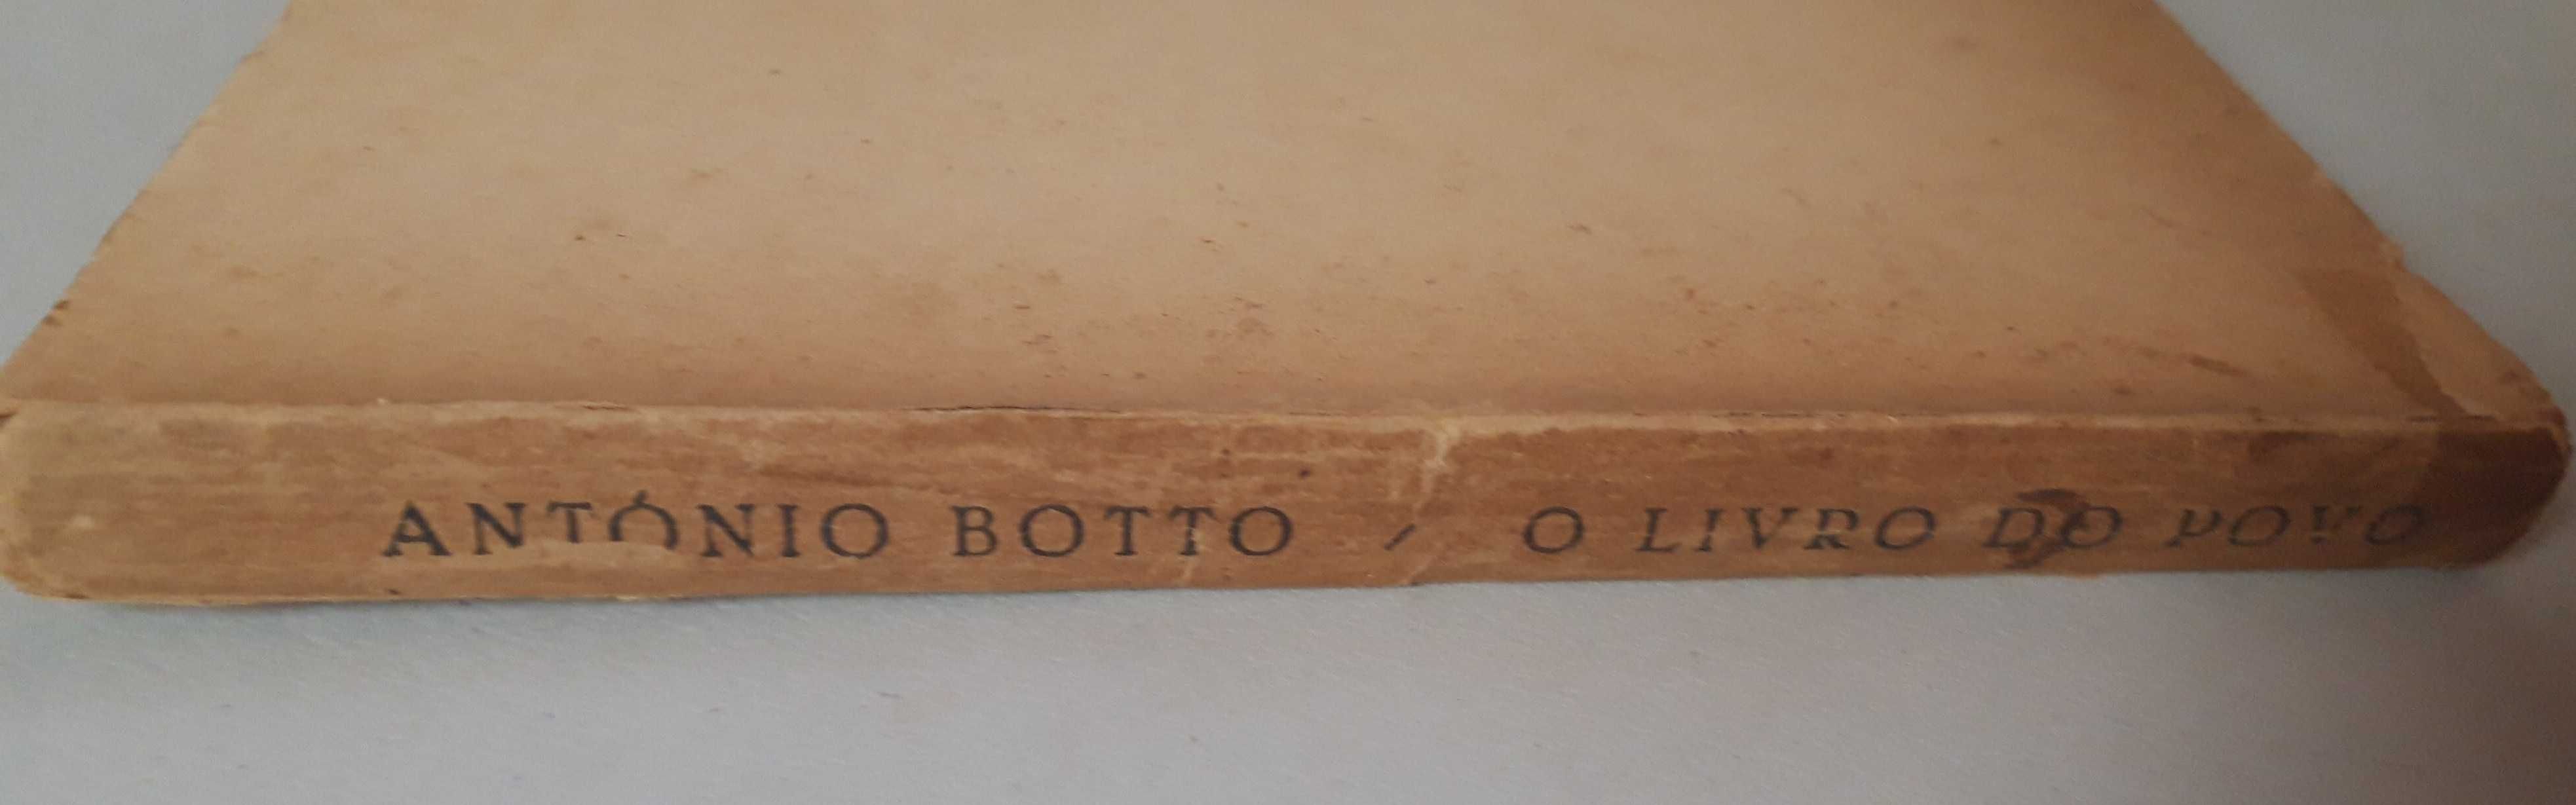 Livro- Ref CxC - António Botto - O Livro do Povo